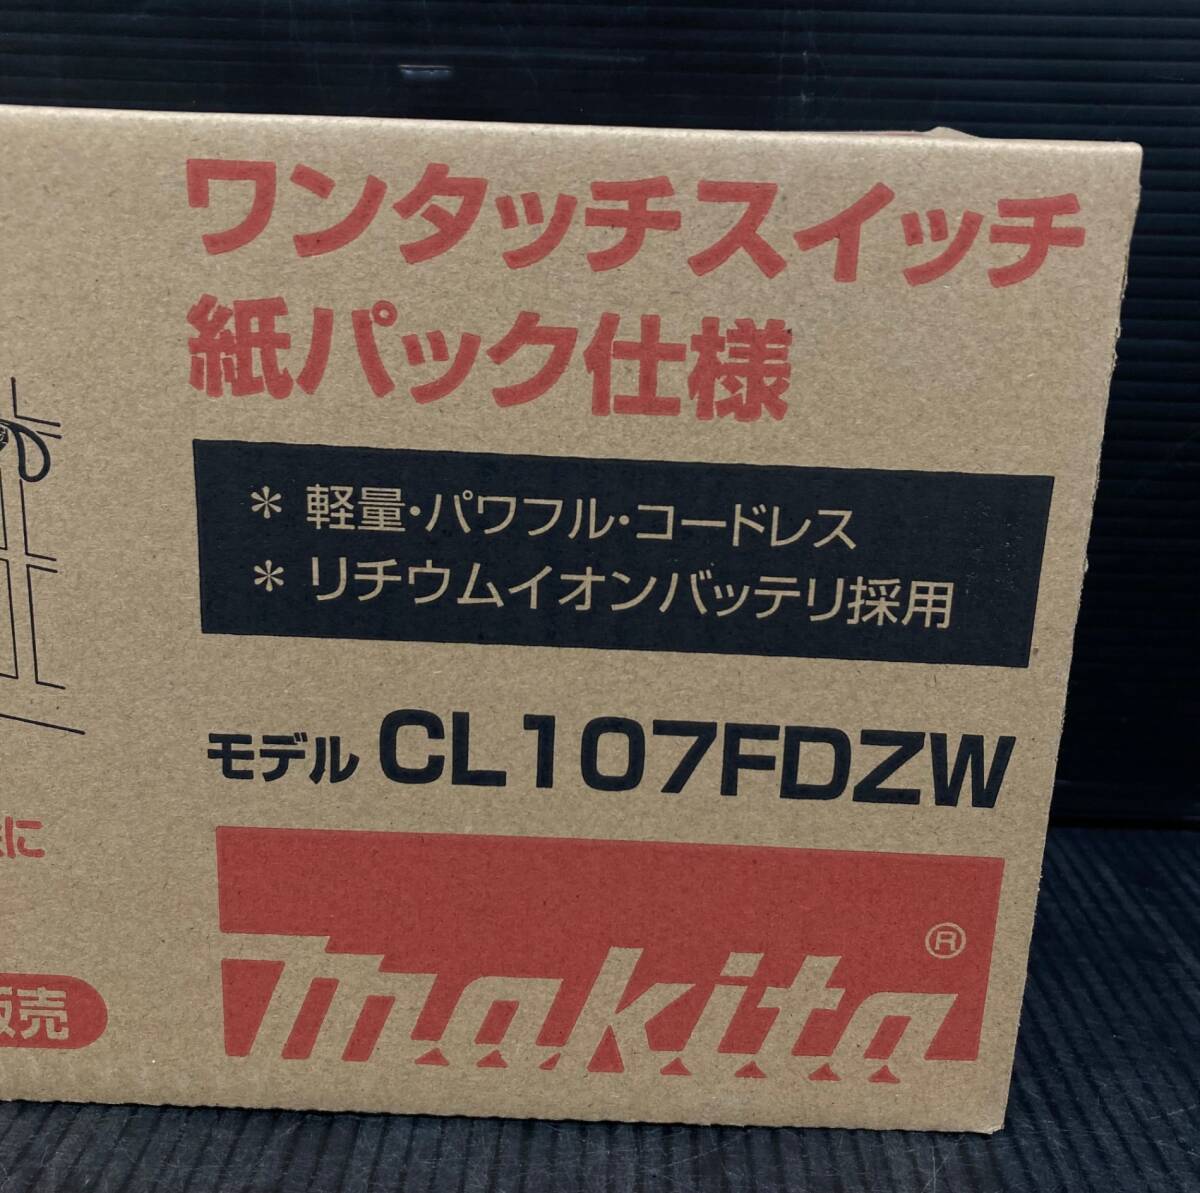 [ не использовался товар ]*makita( Makita ) 10.8v заряжающийся фильтр ( корпус только ) CL107FDZW IT364CWQD358